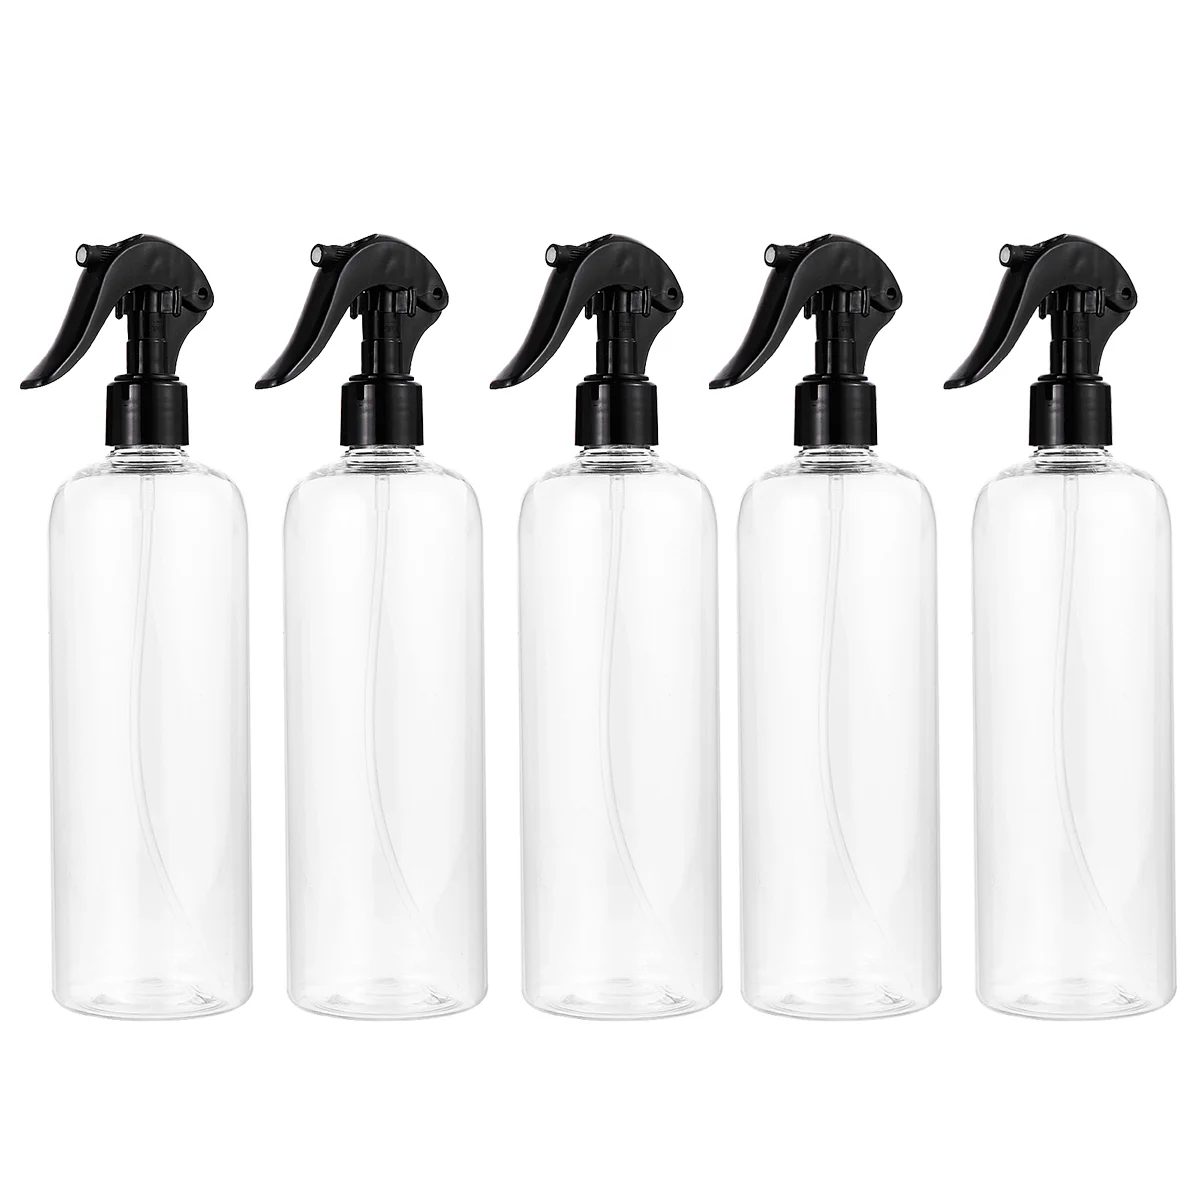 5 Sets 500ML Plastic Spray Bottle Empty Water Sprayer Refillable Mist Atomizer Bottles Multifunctional Dispenser for Travel